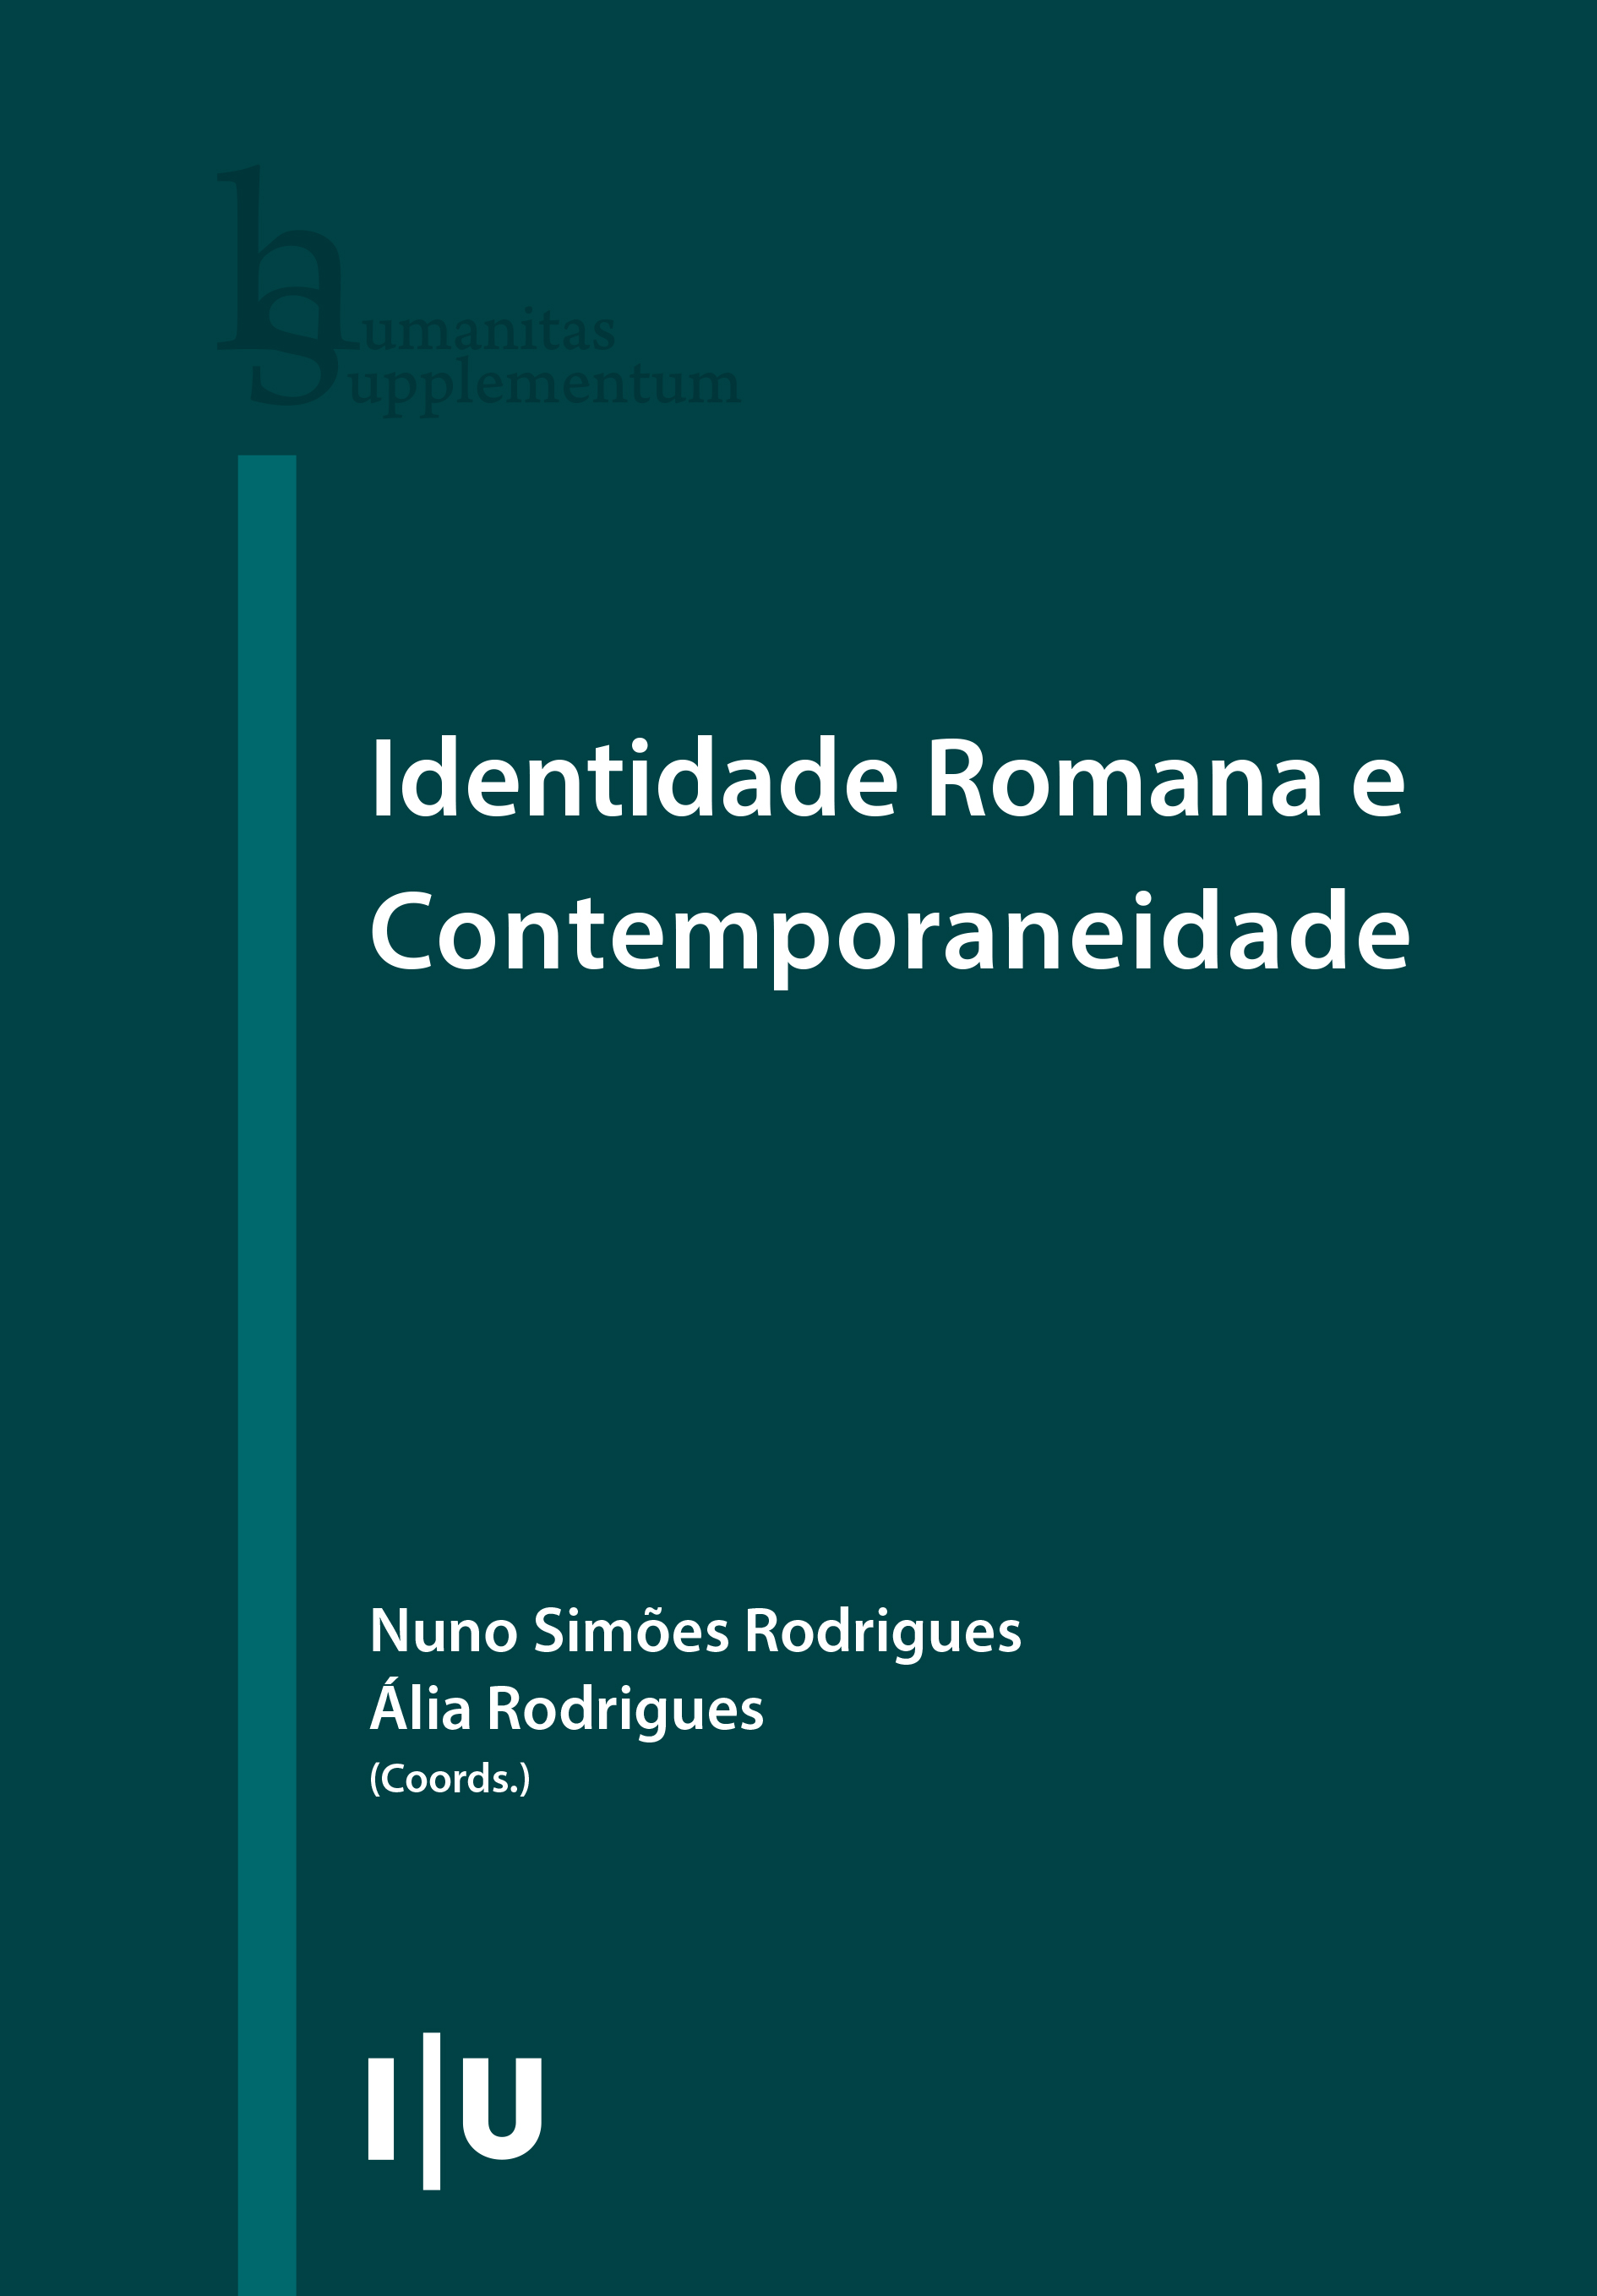 Julio Nogueira - Dicionário de Os Lusíadas, PDF